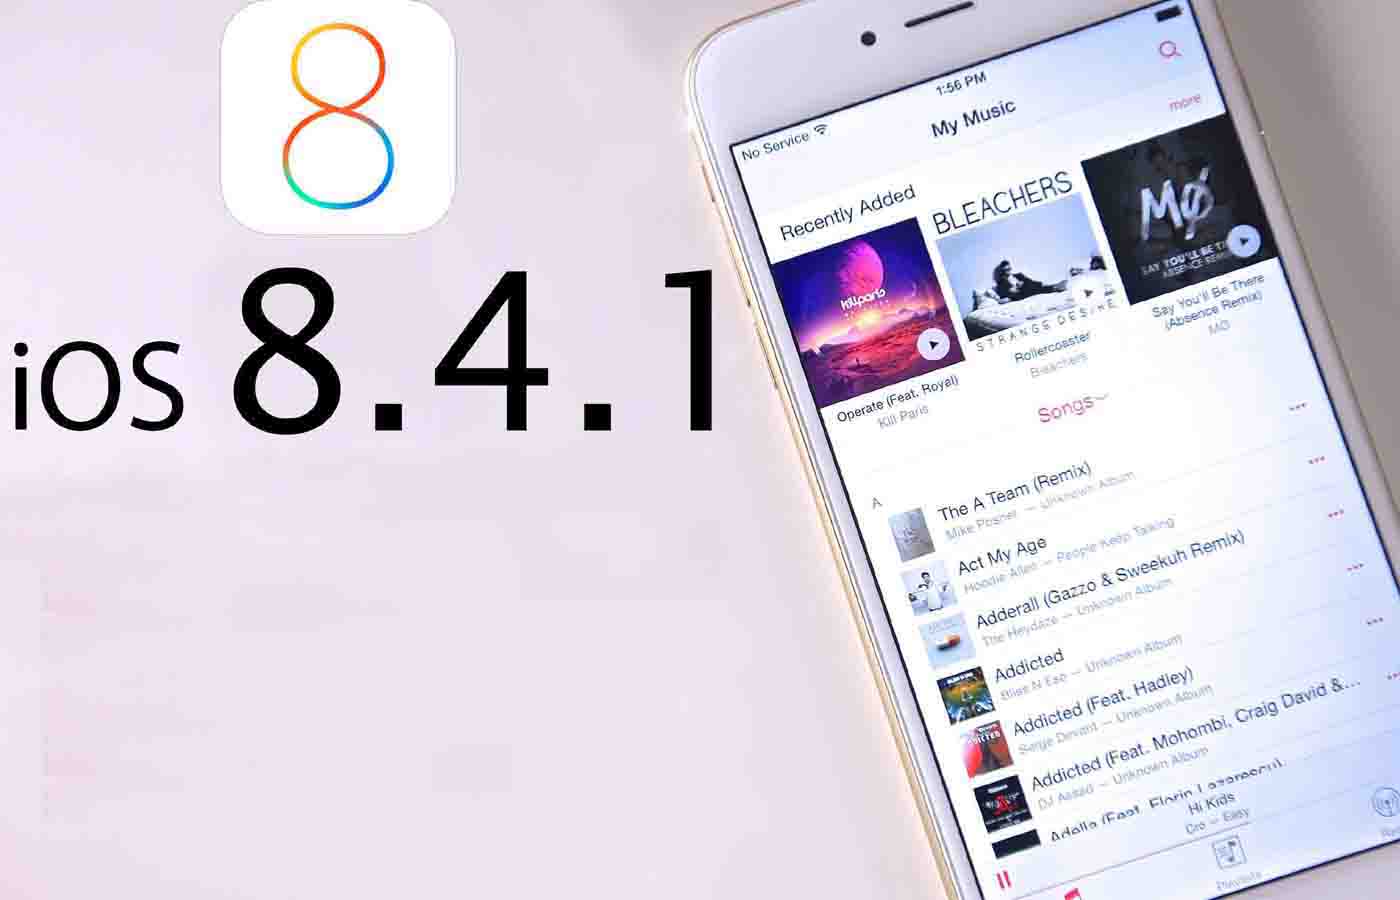 iOS 8.4.1